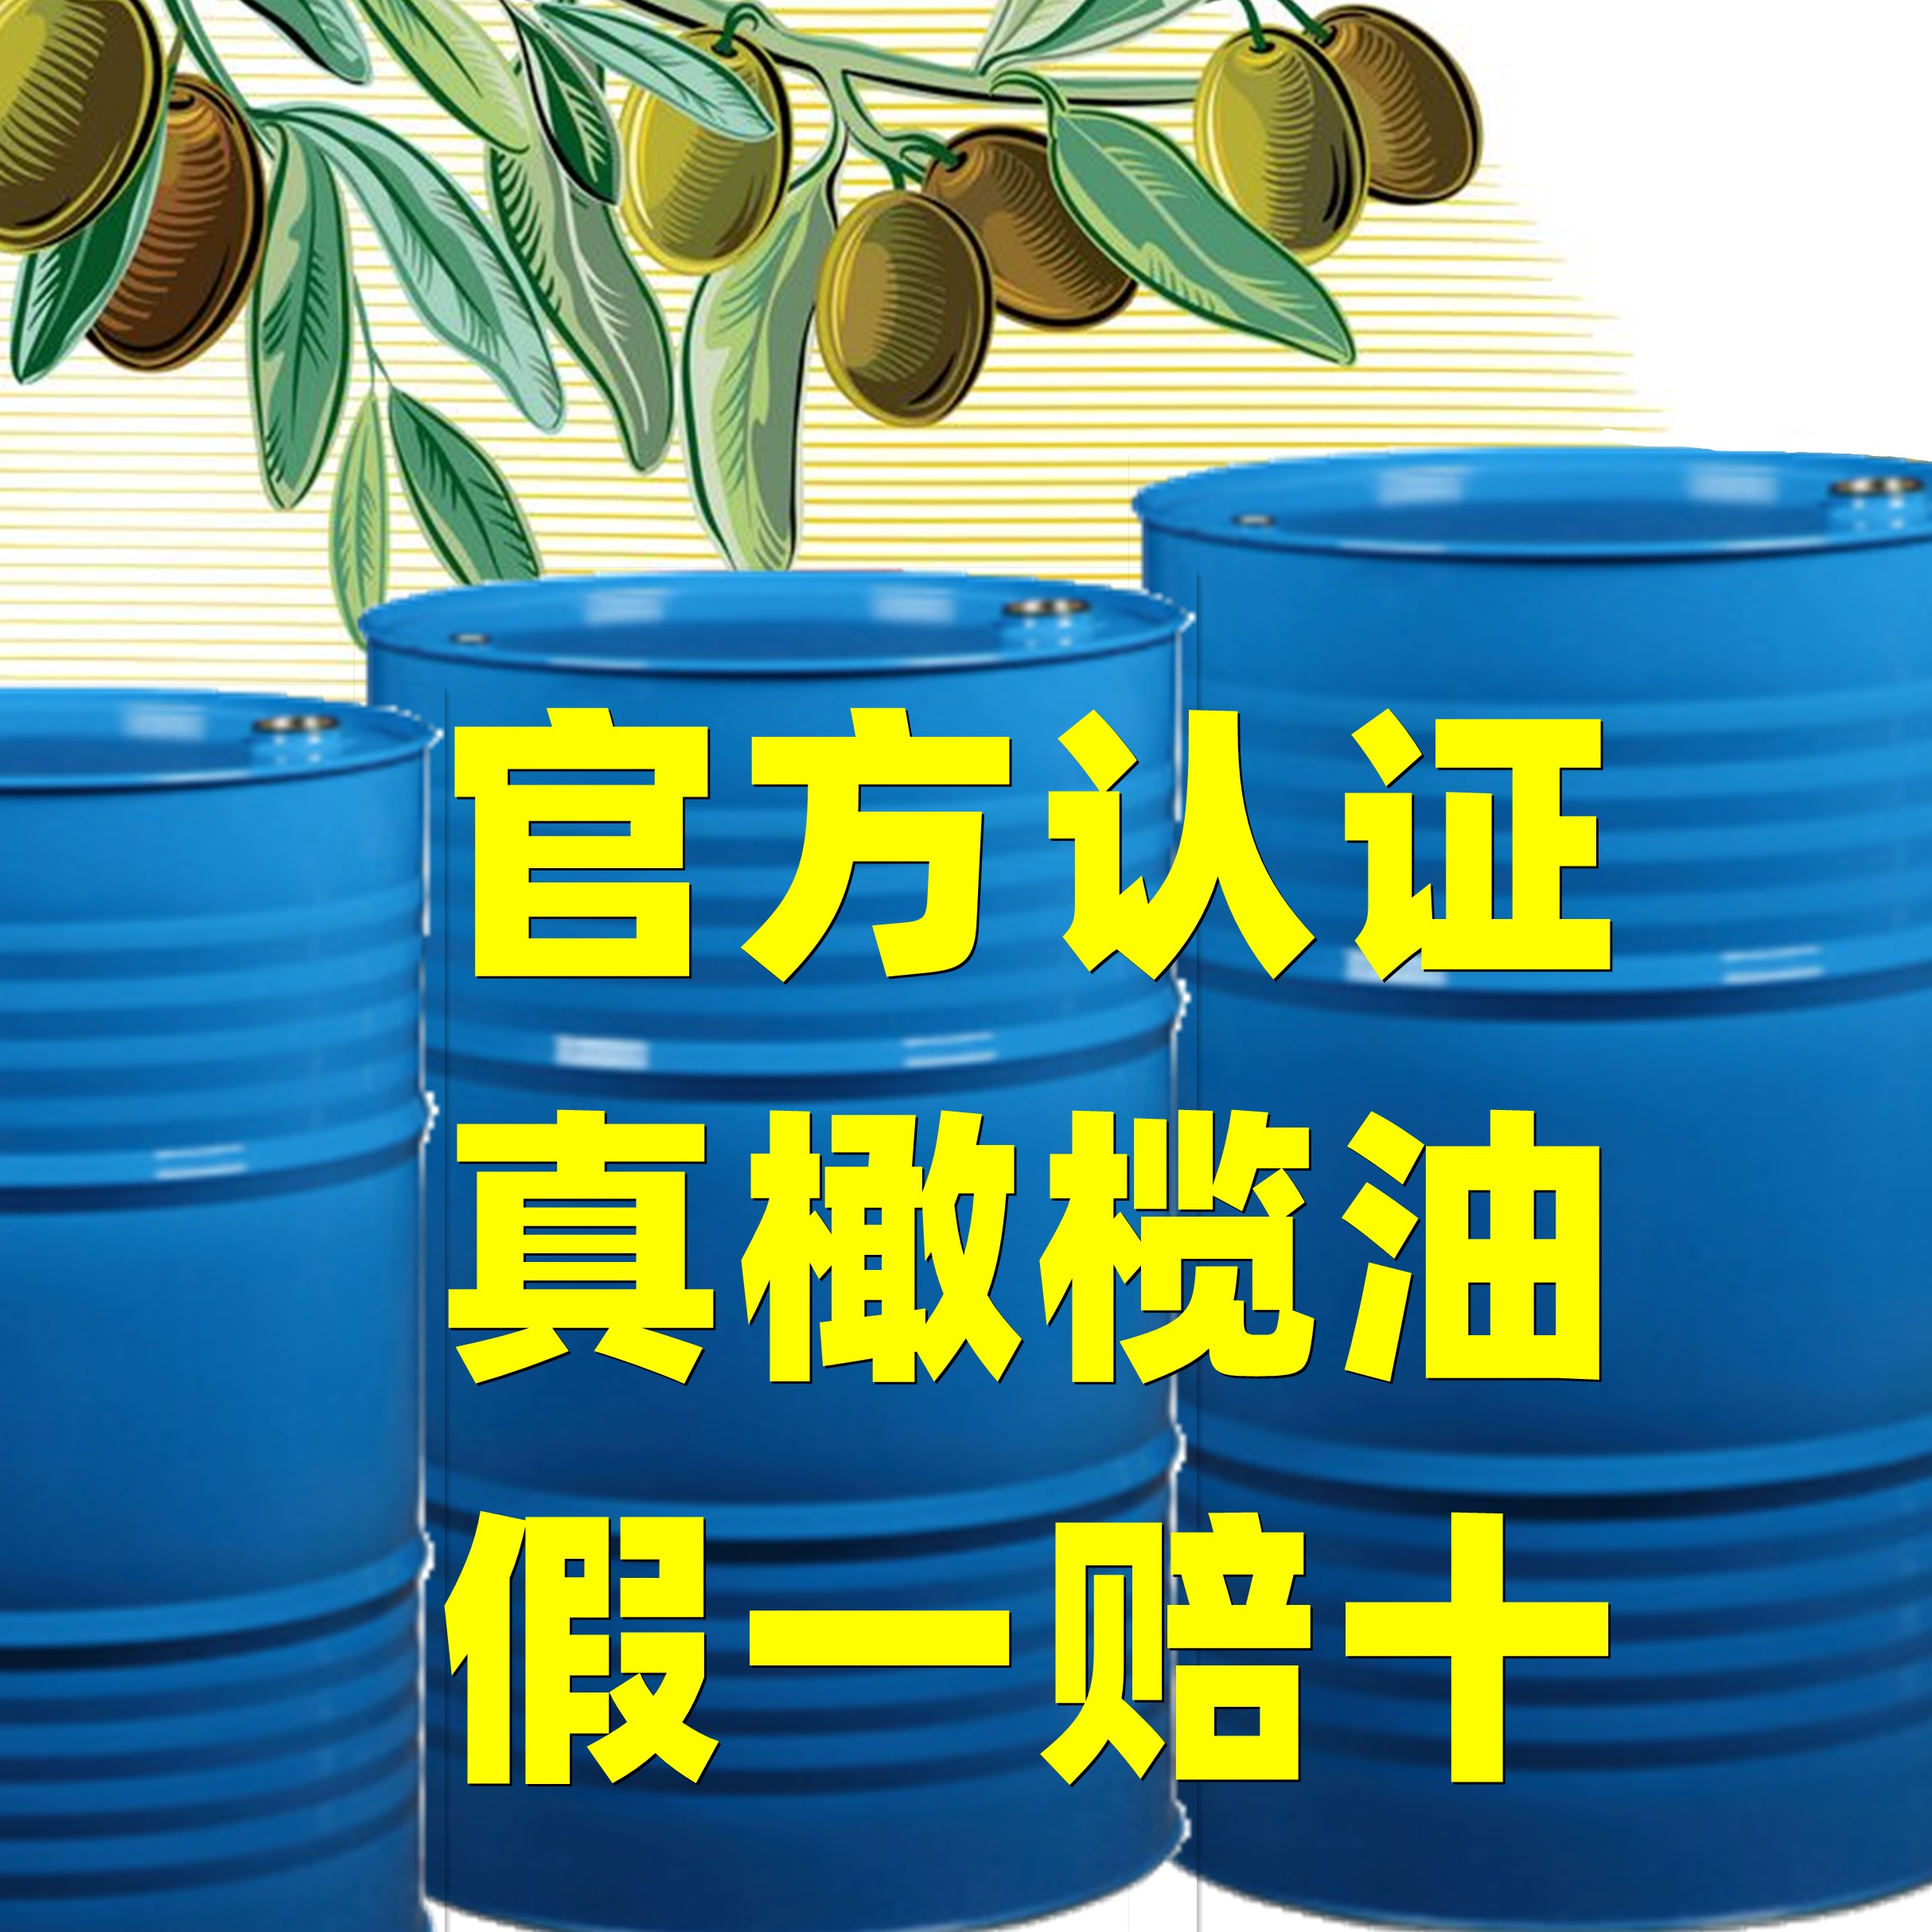 上海一吨橄榄油怎么买